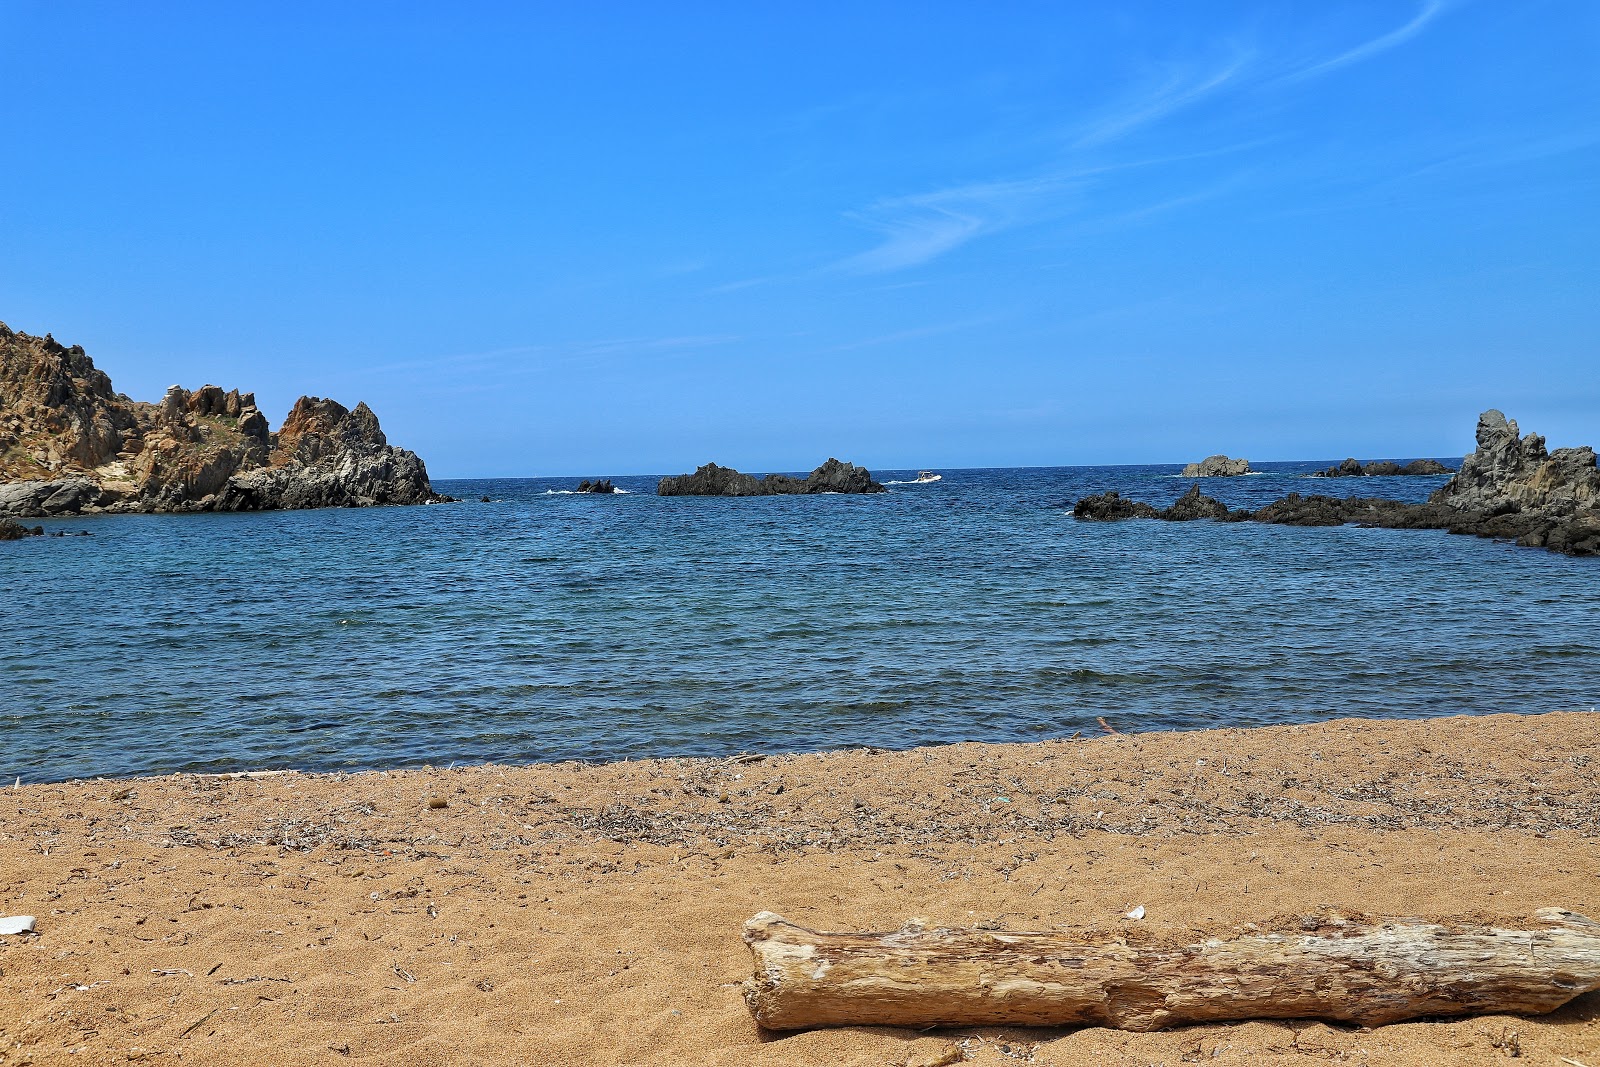 Photo of Spiaggia di Cala Faa located in natural area